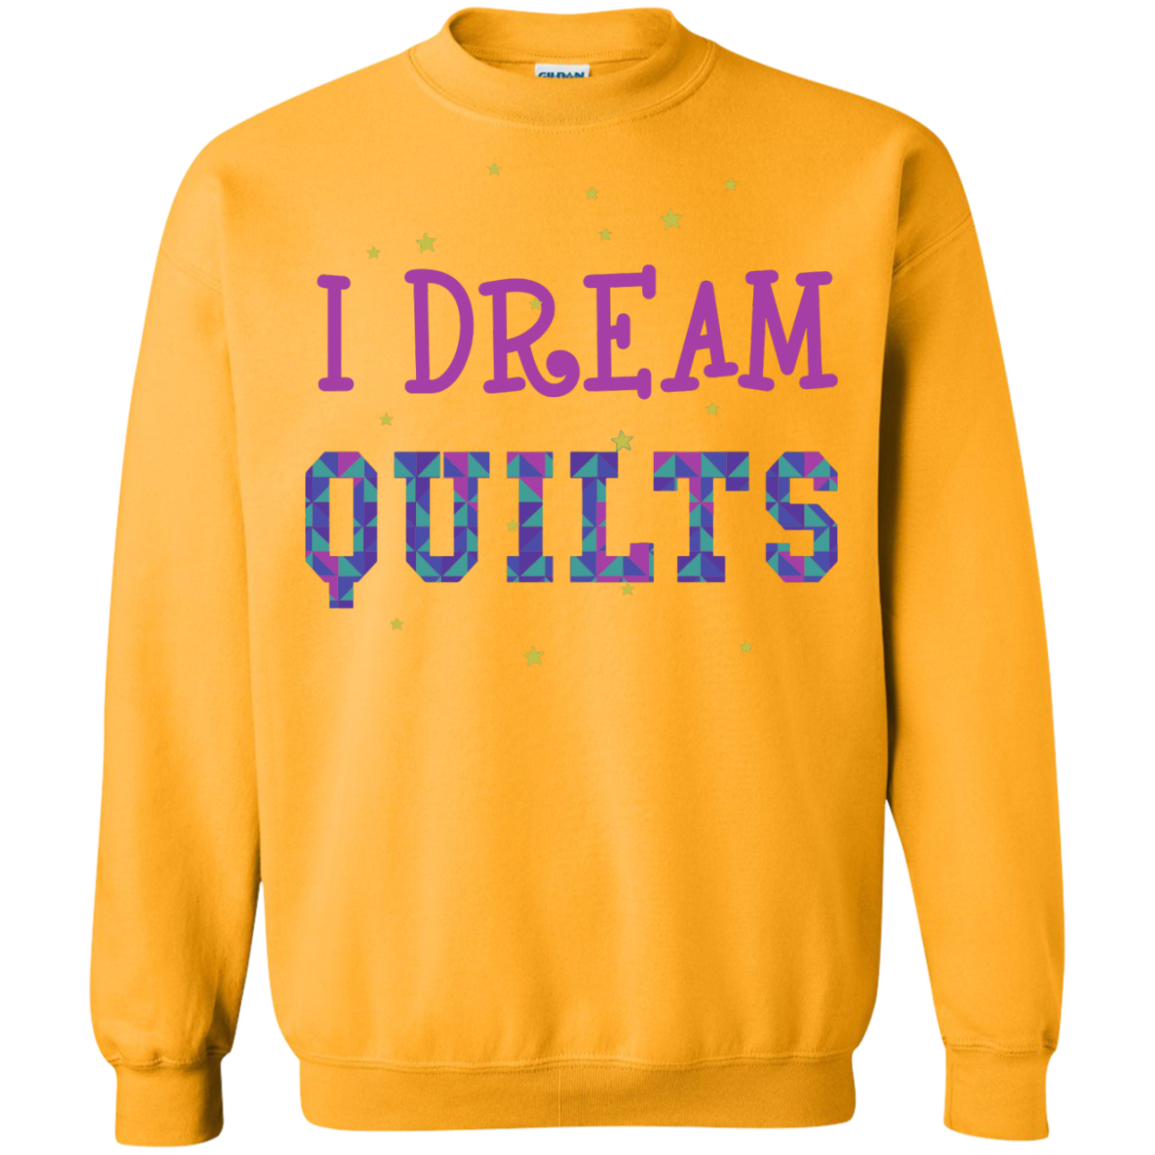 I Dream Quilts Crewneck Sweatshirt - Crafter4Life - 2